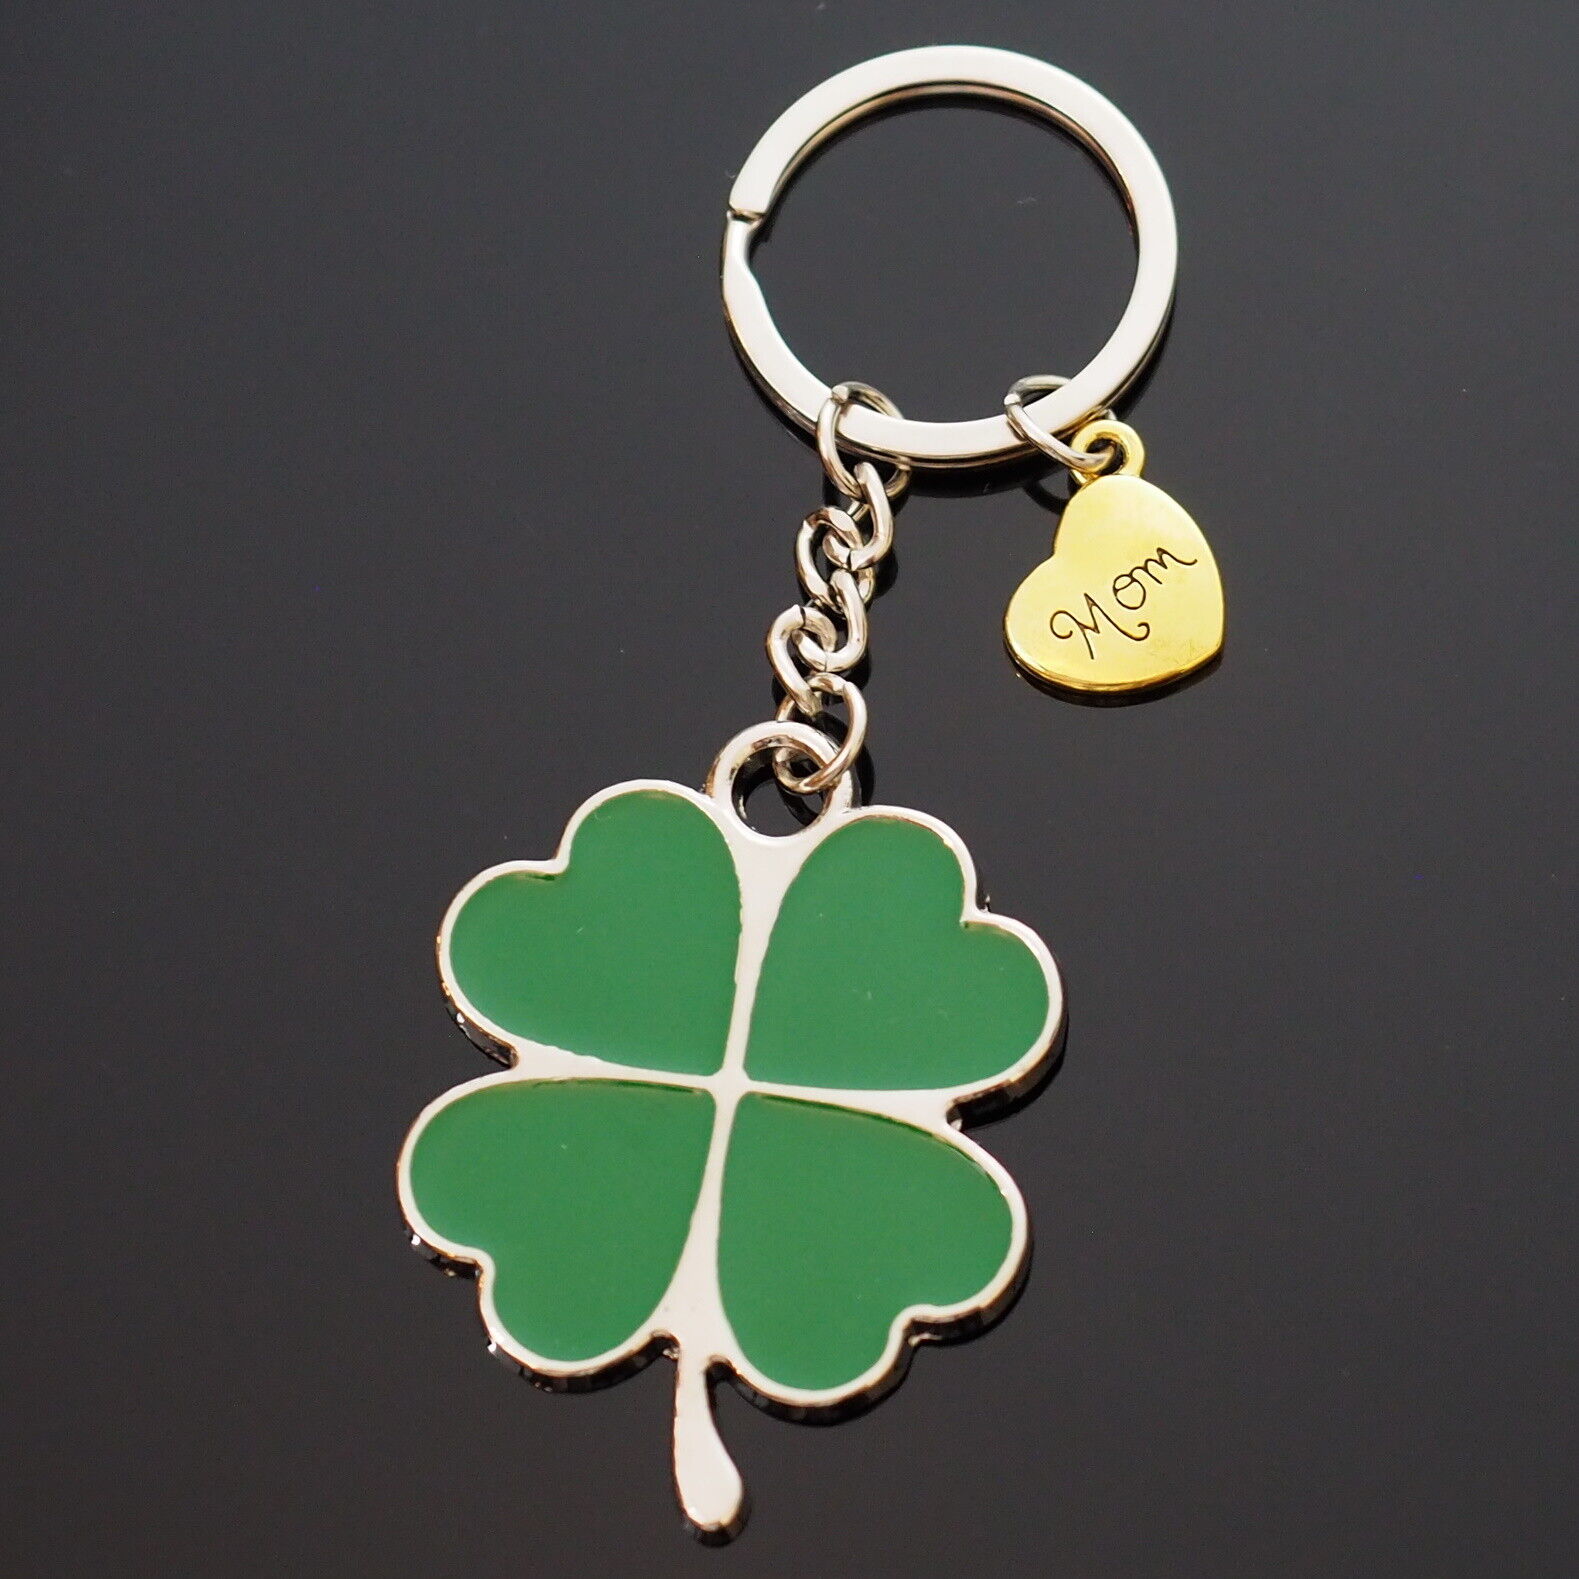 1x Four Leaf Clover Hearts Lucky Key Chain Charm Pendant Gold Mom Heart Keychain